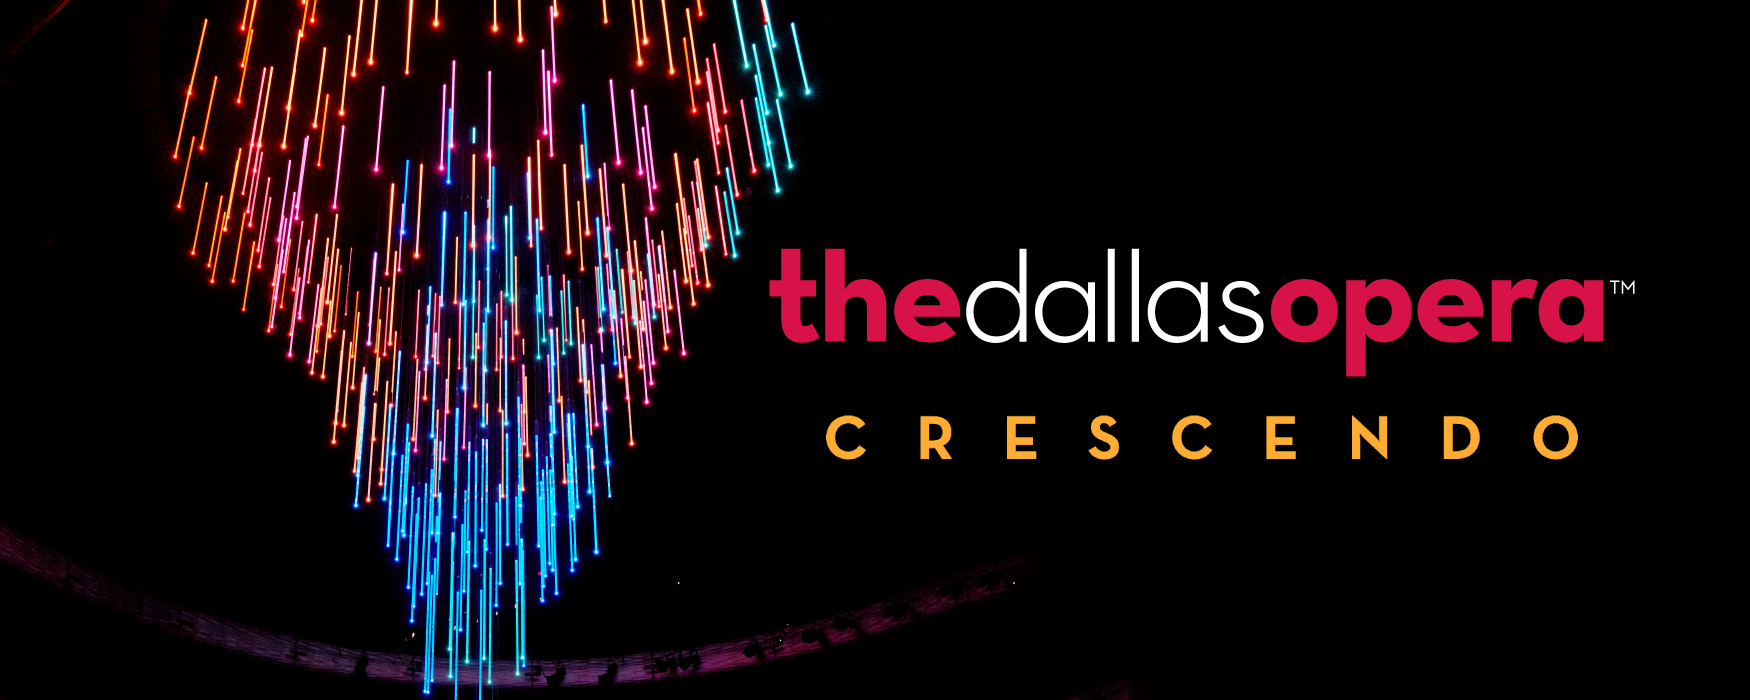 The Dallas Opera Crescendo program